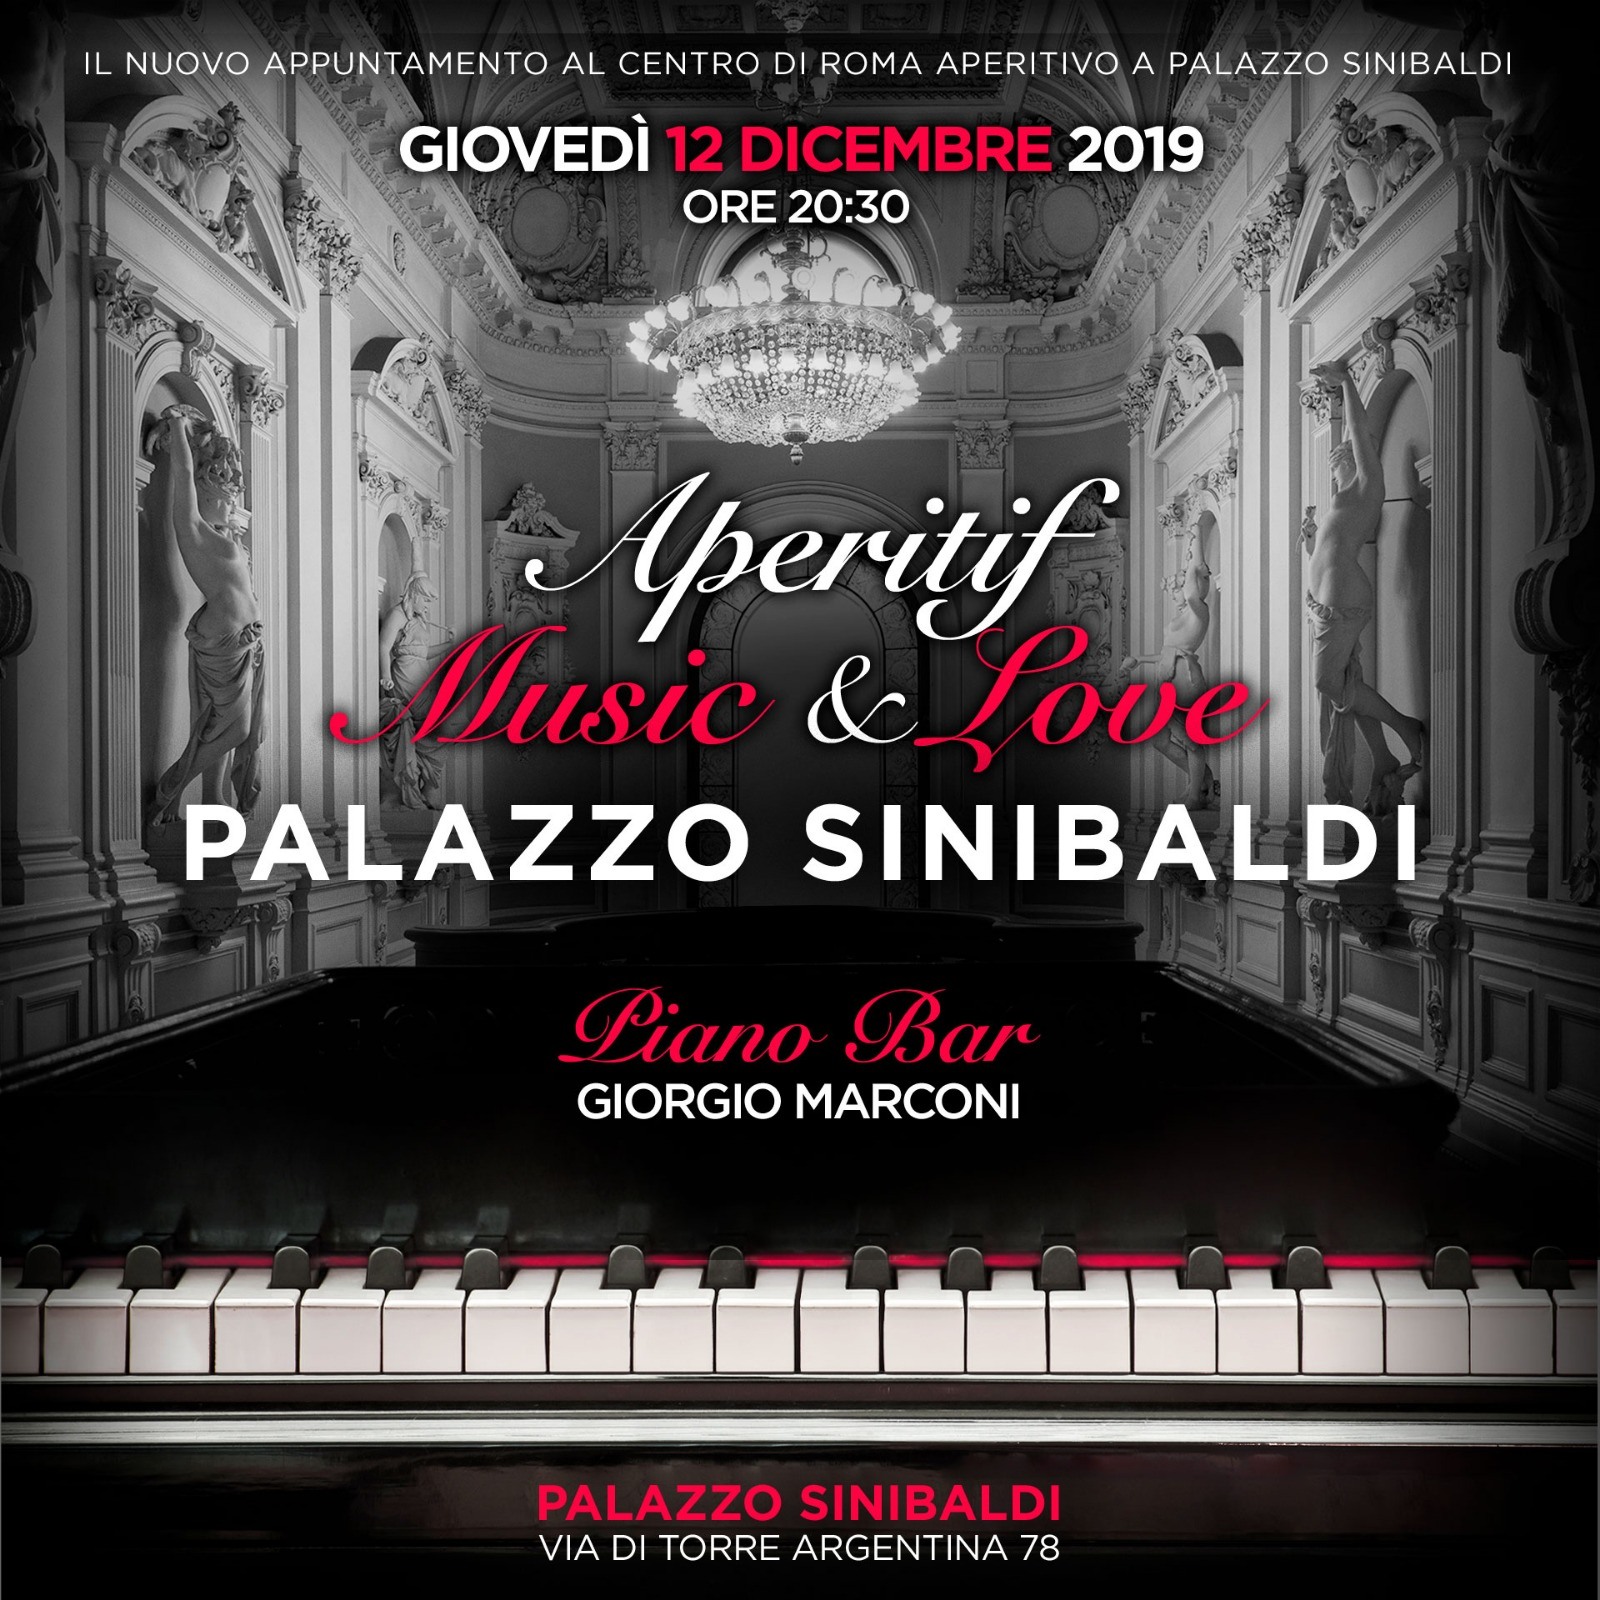 Shari Vari giovedì 12 dicembre 2019 Aperitivo Palazzo Sinibaldi